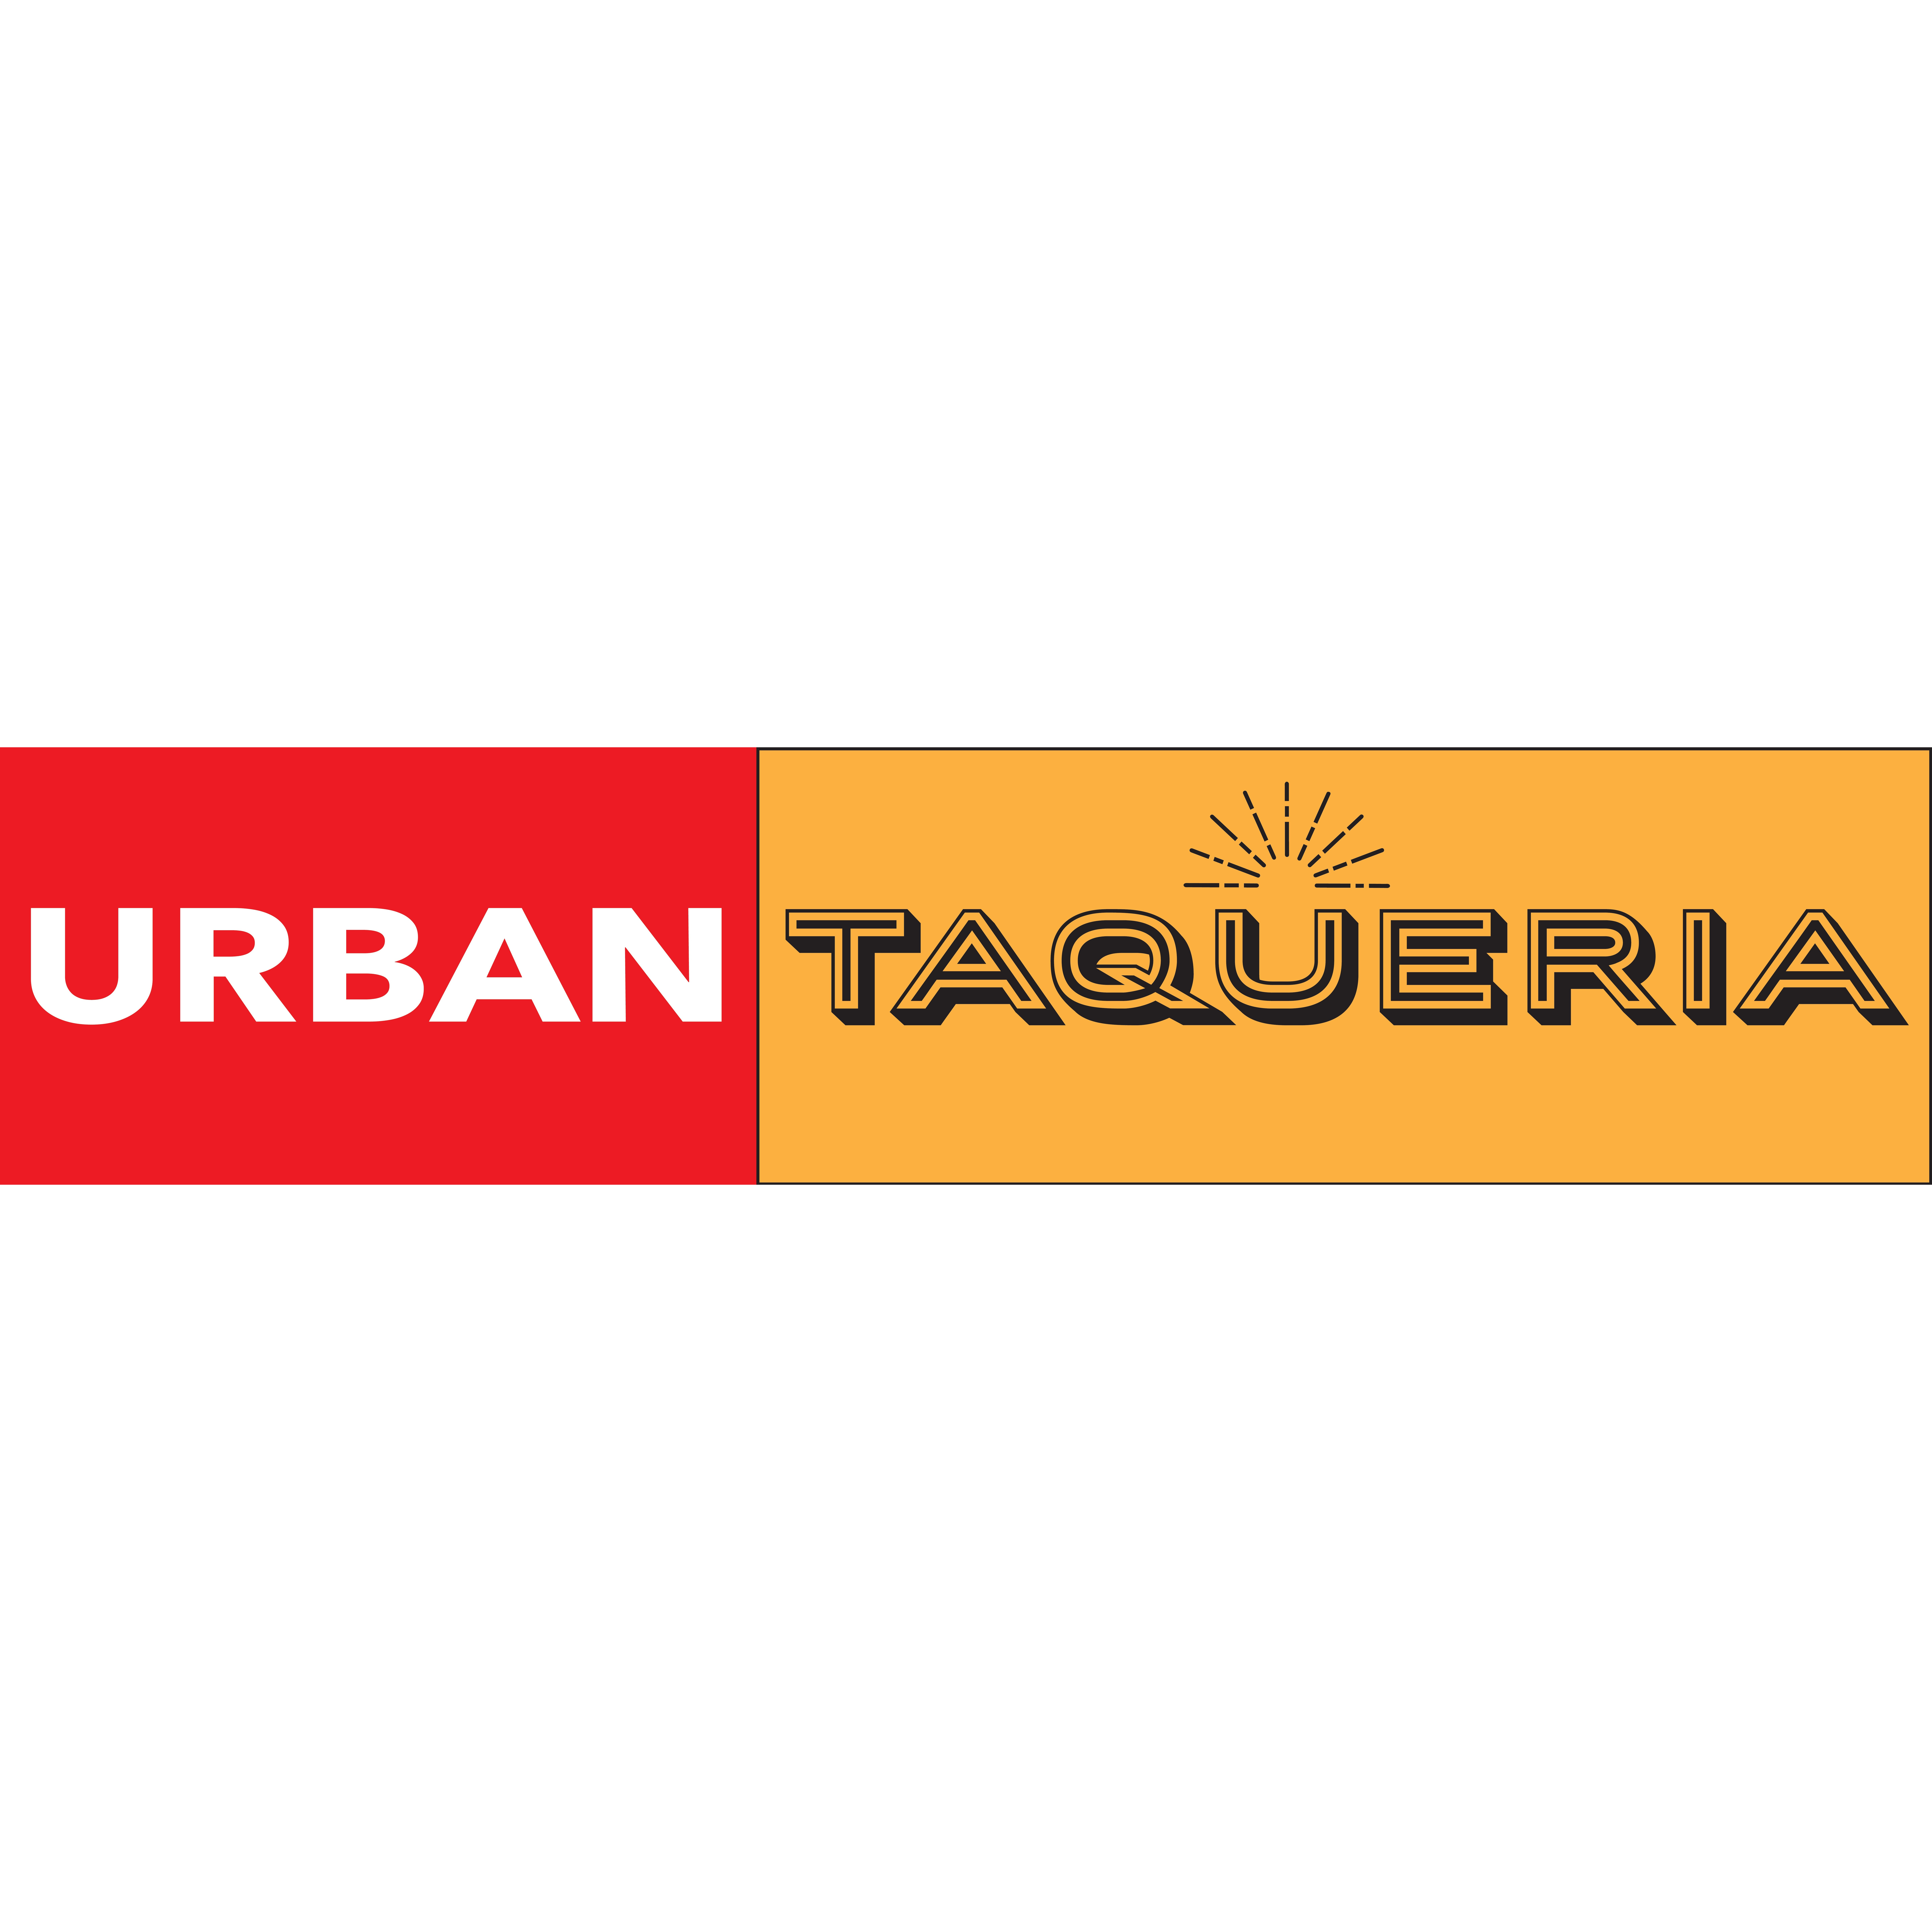 Urban taqueria Logo